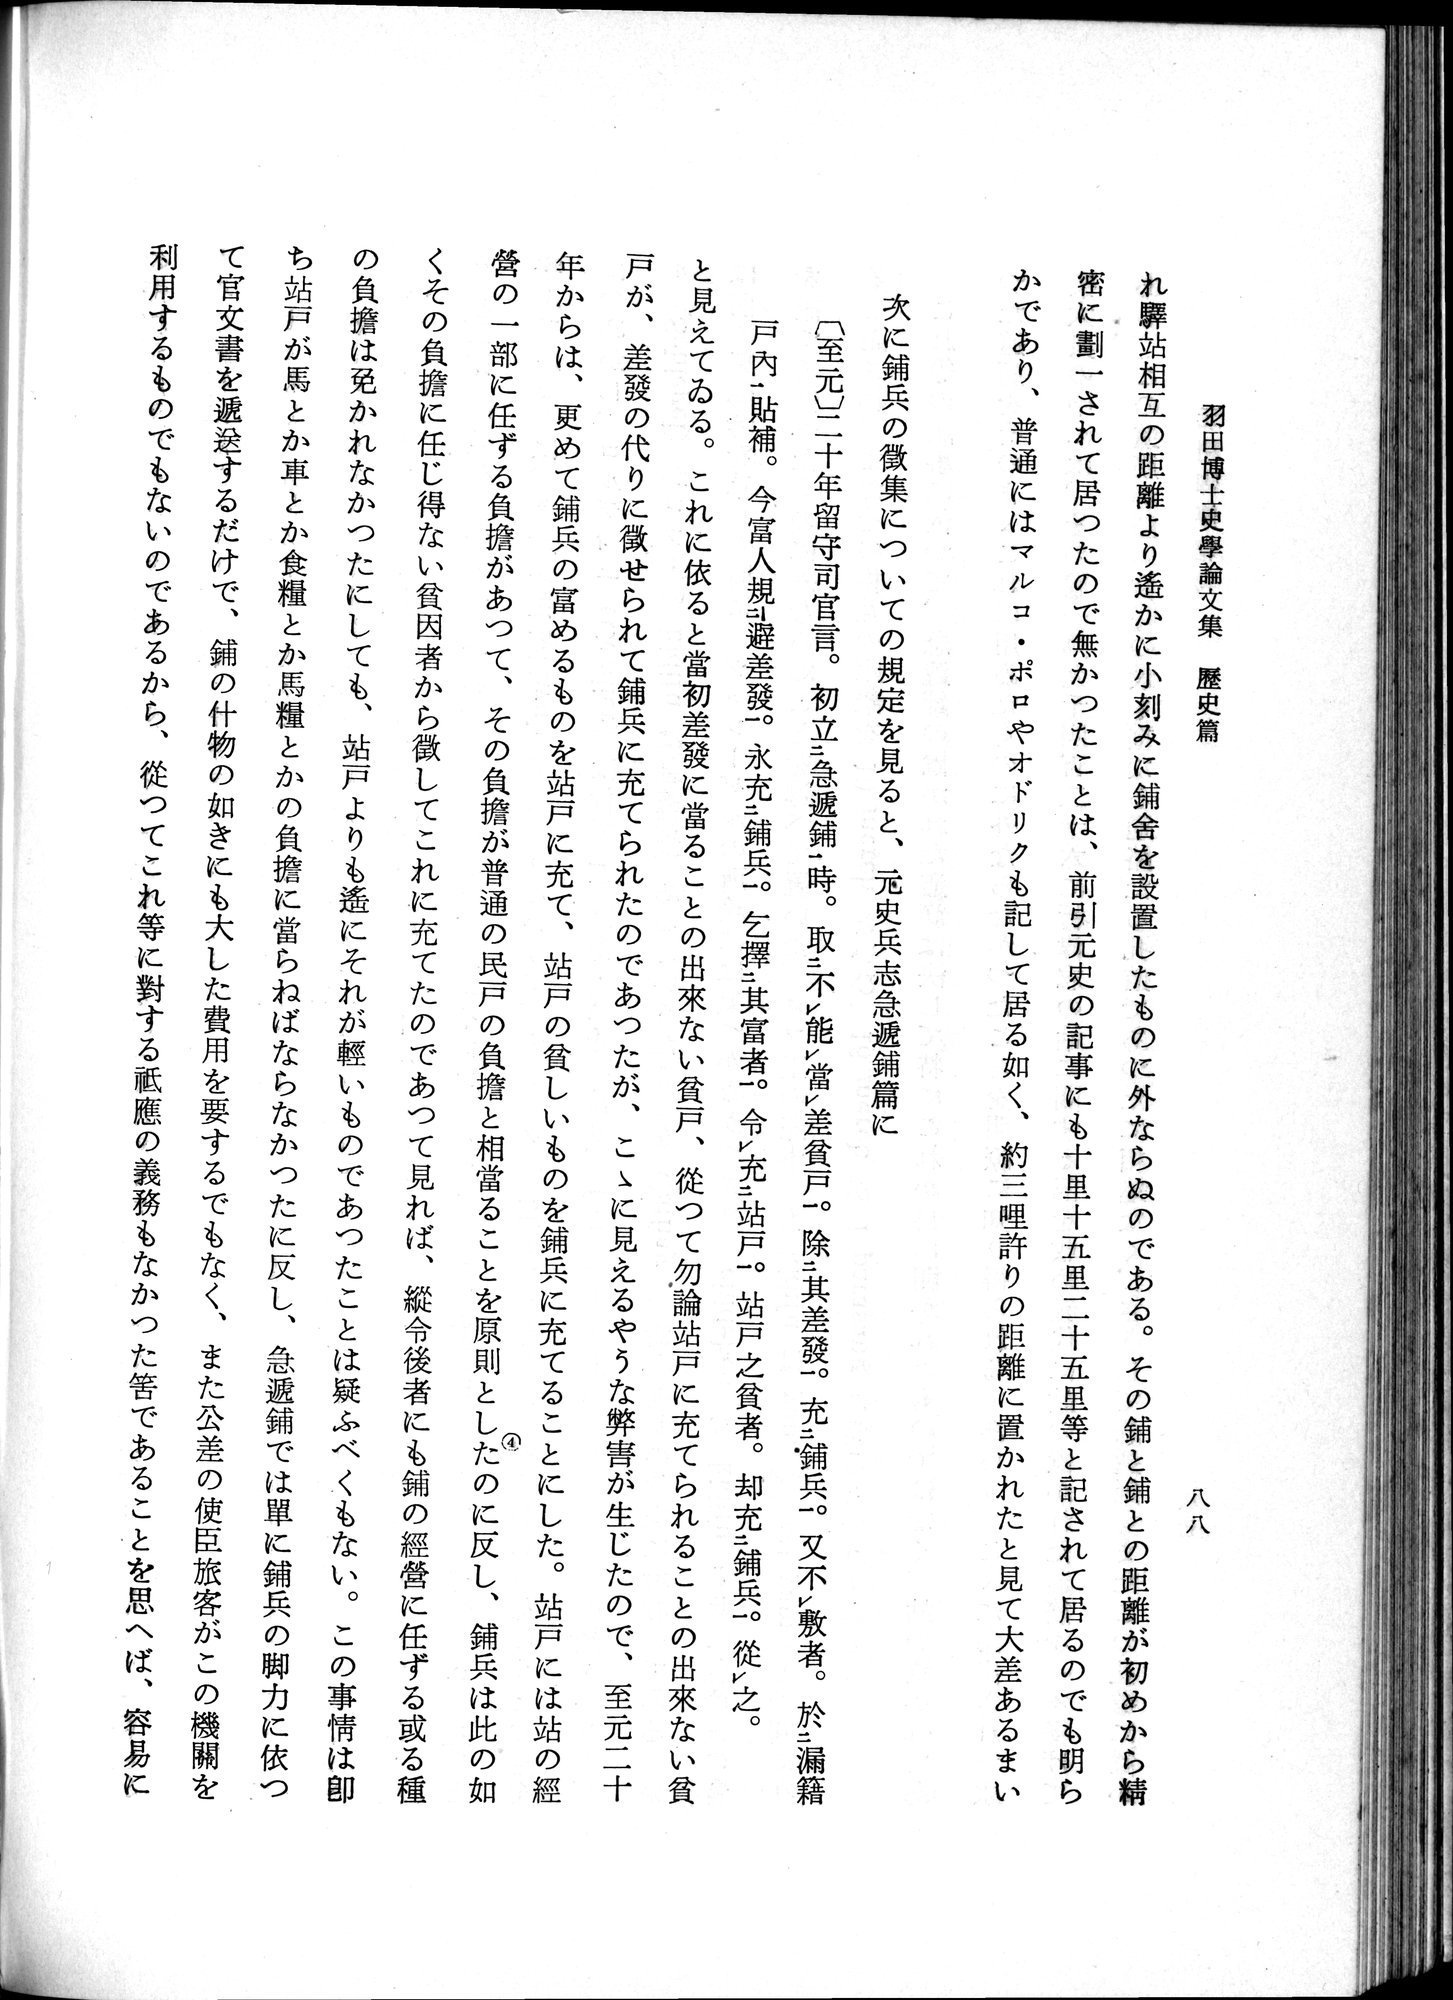 羽田博士史学論文集 : vol.1 / Page 126 (Grayscale High Resolution Image)